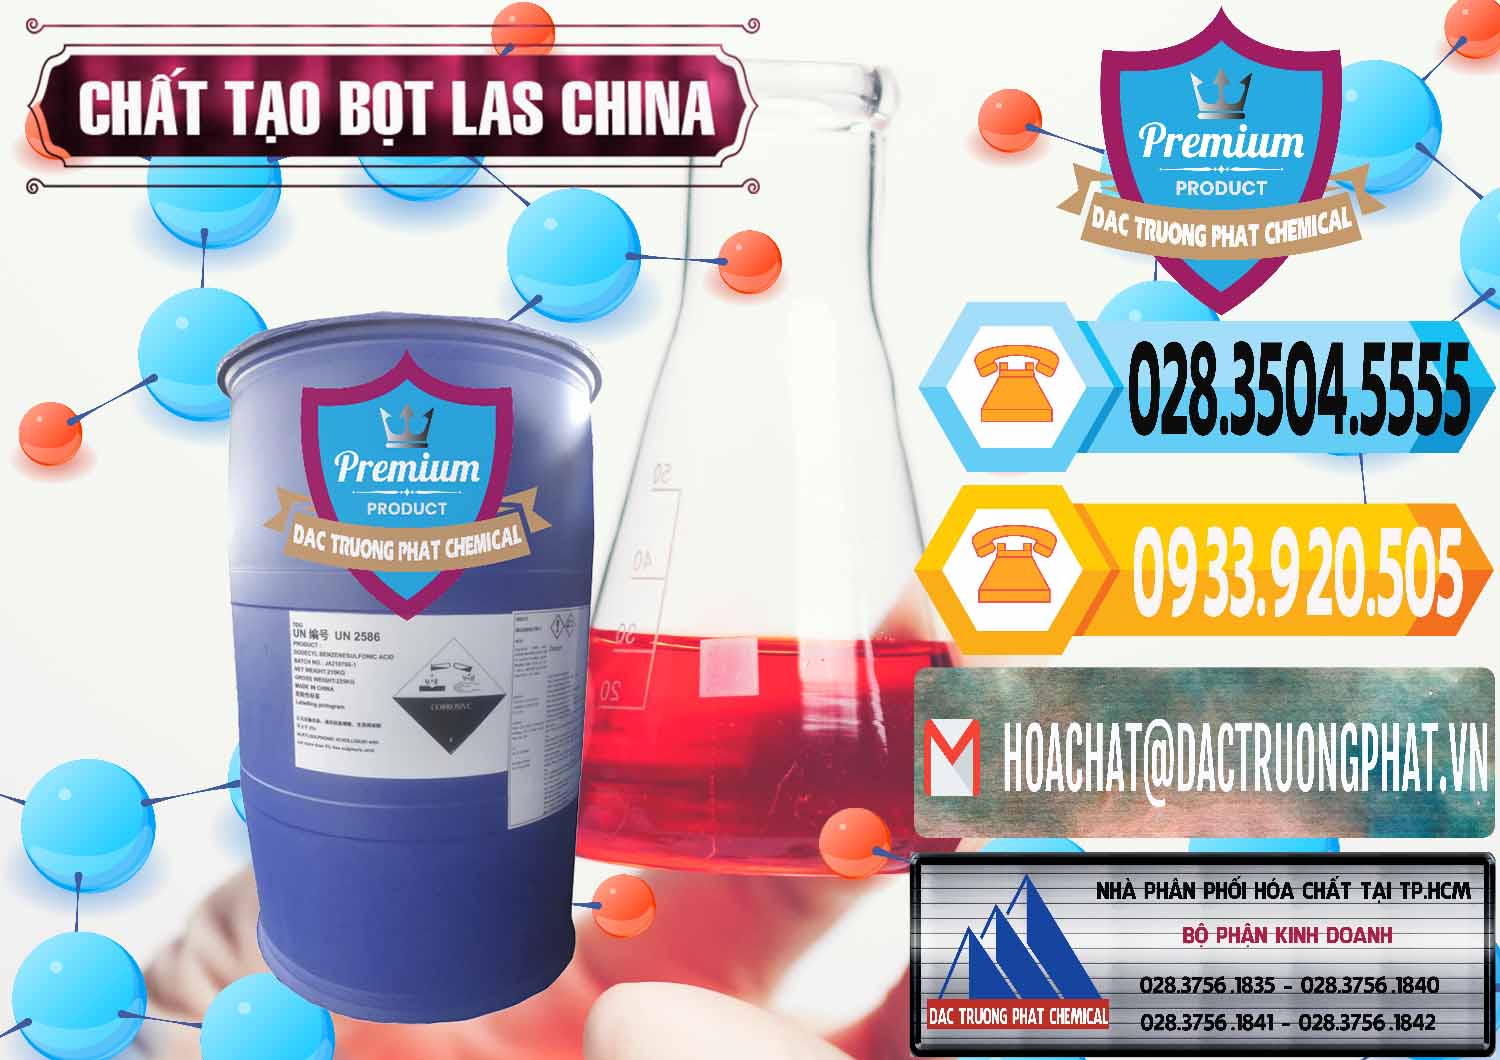 Cty chuyên kinh doanh & bán Chất tạo bọt Las Trung Quốc China - 0451 - Đơn vị bán & phân phối hóa chất tại TP.HCM - hoachattayrua.net